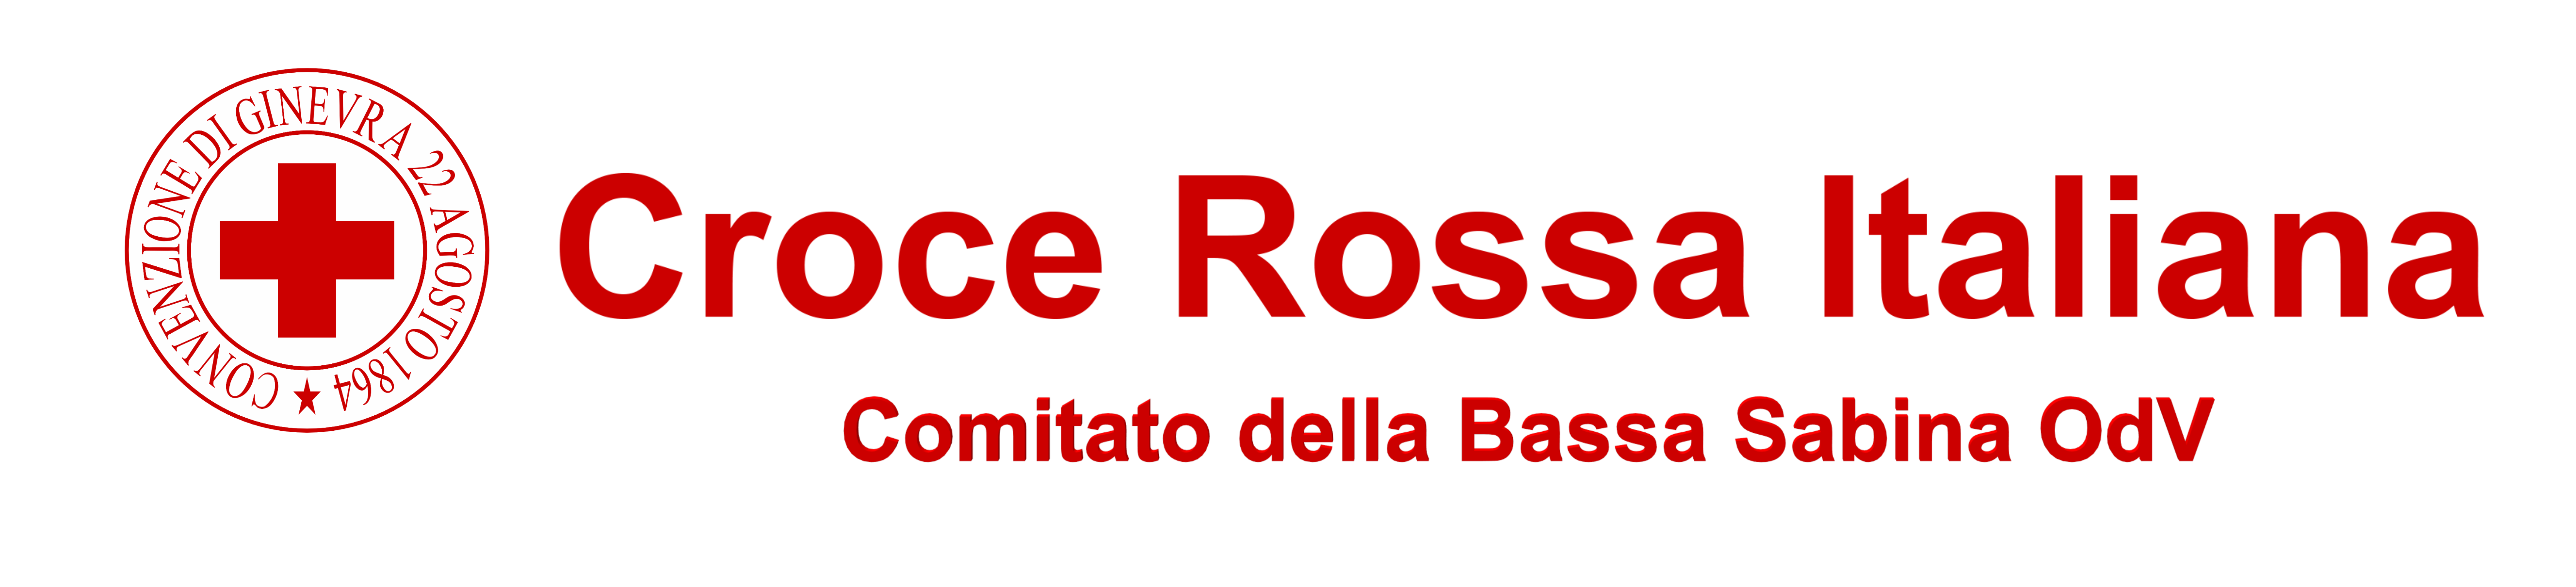 Croce Rossa Italiana – Comitato della Bassa Sabina Odv